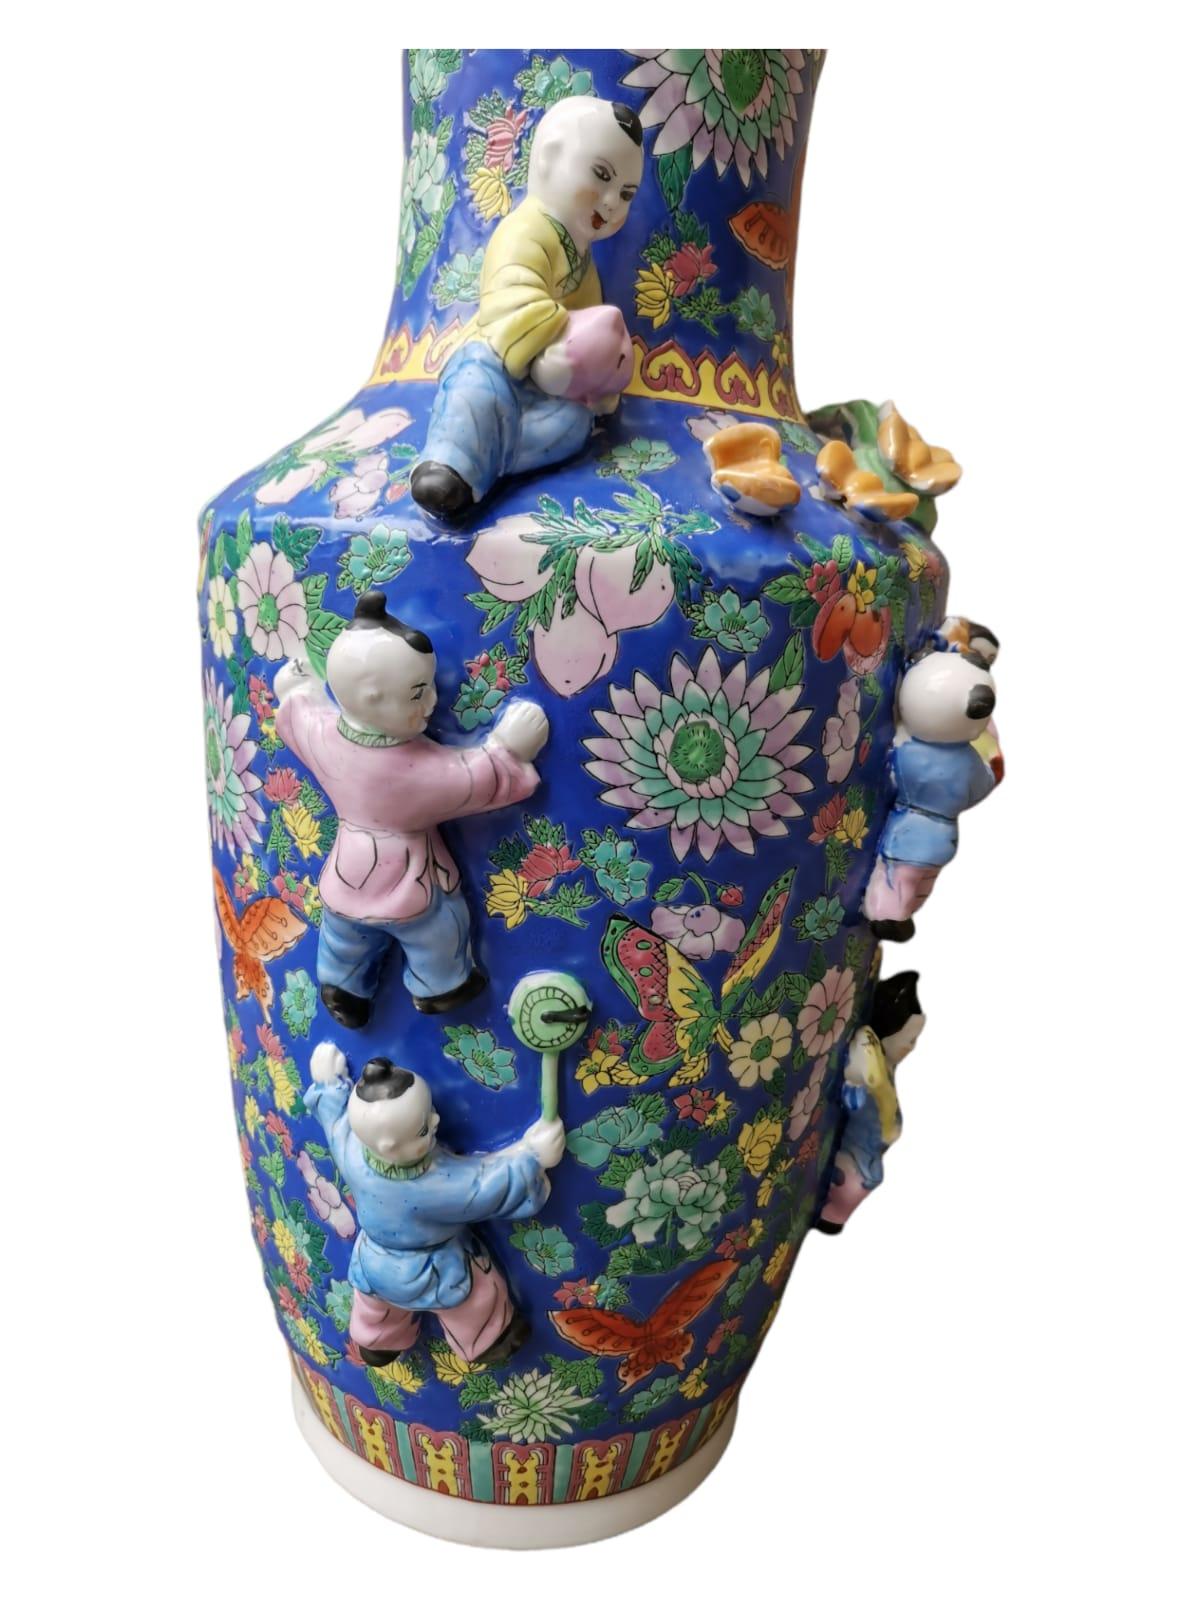 Grand vase chinois. En porcelaine de la première moitié du 20e siècle. Bon état . Mesures : 65 cm de hauteur.
Très bon état.